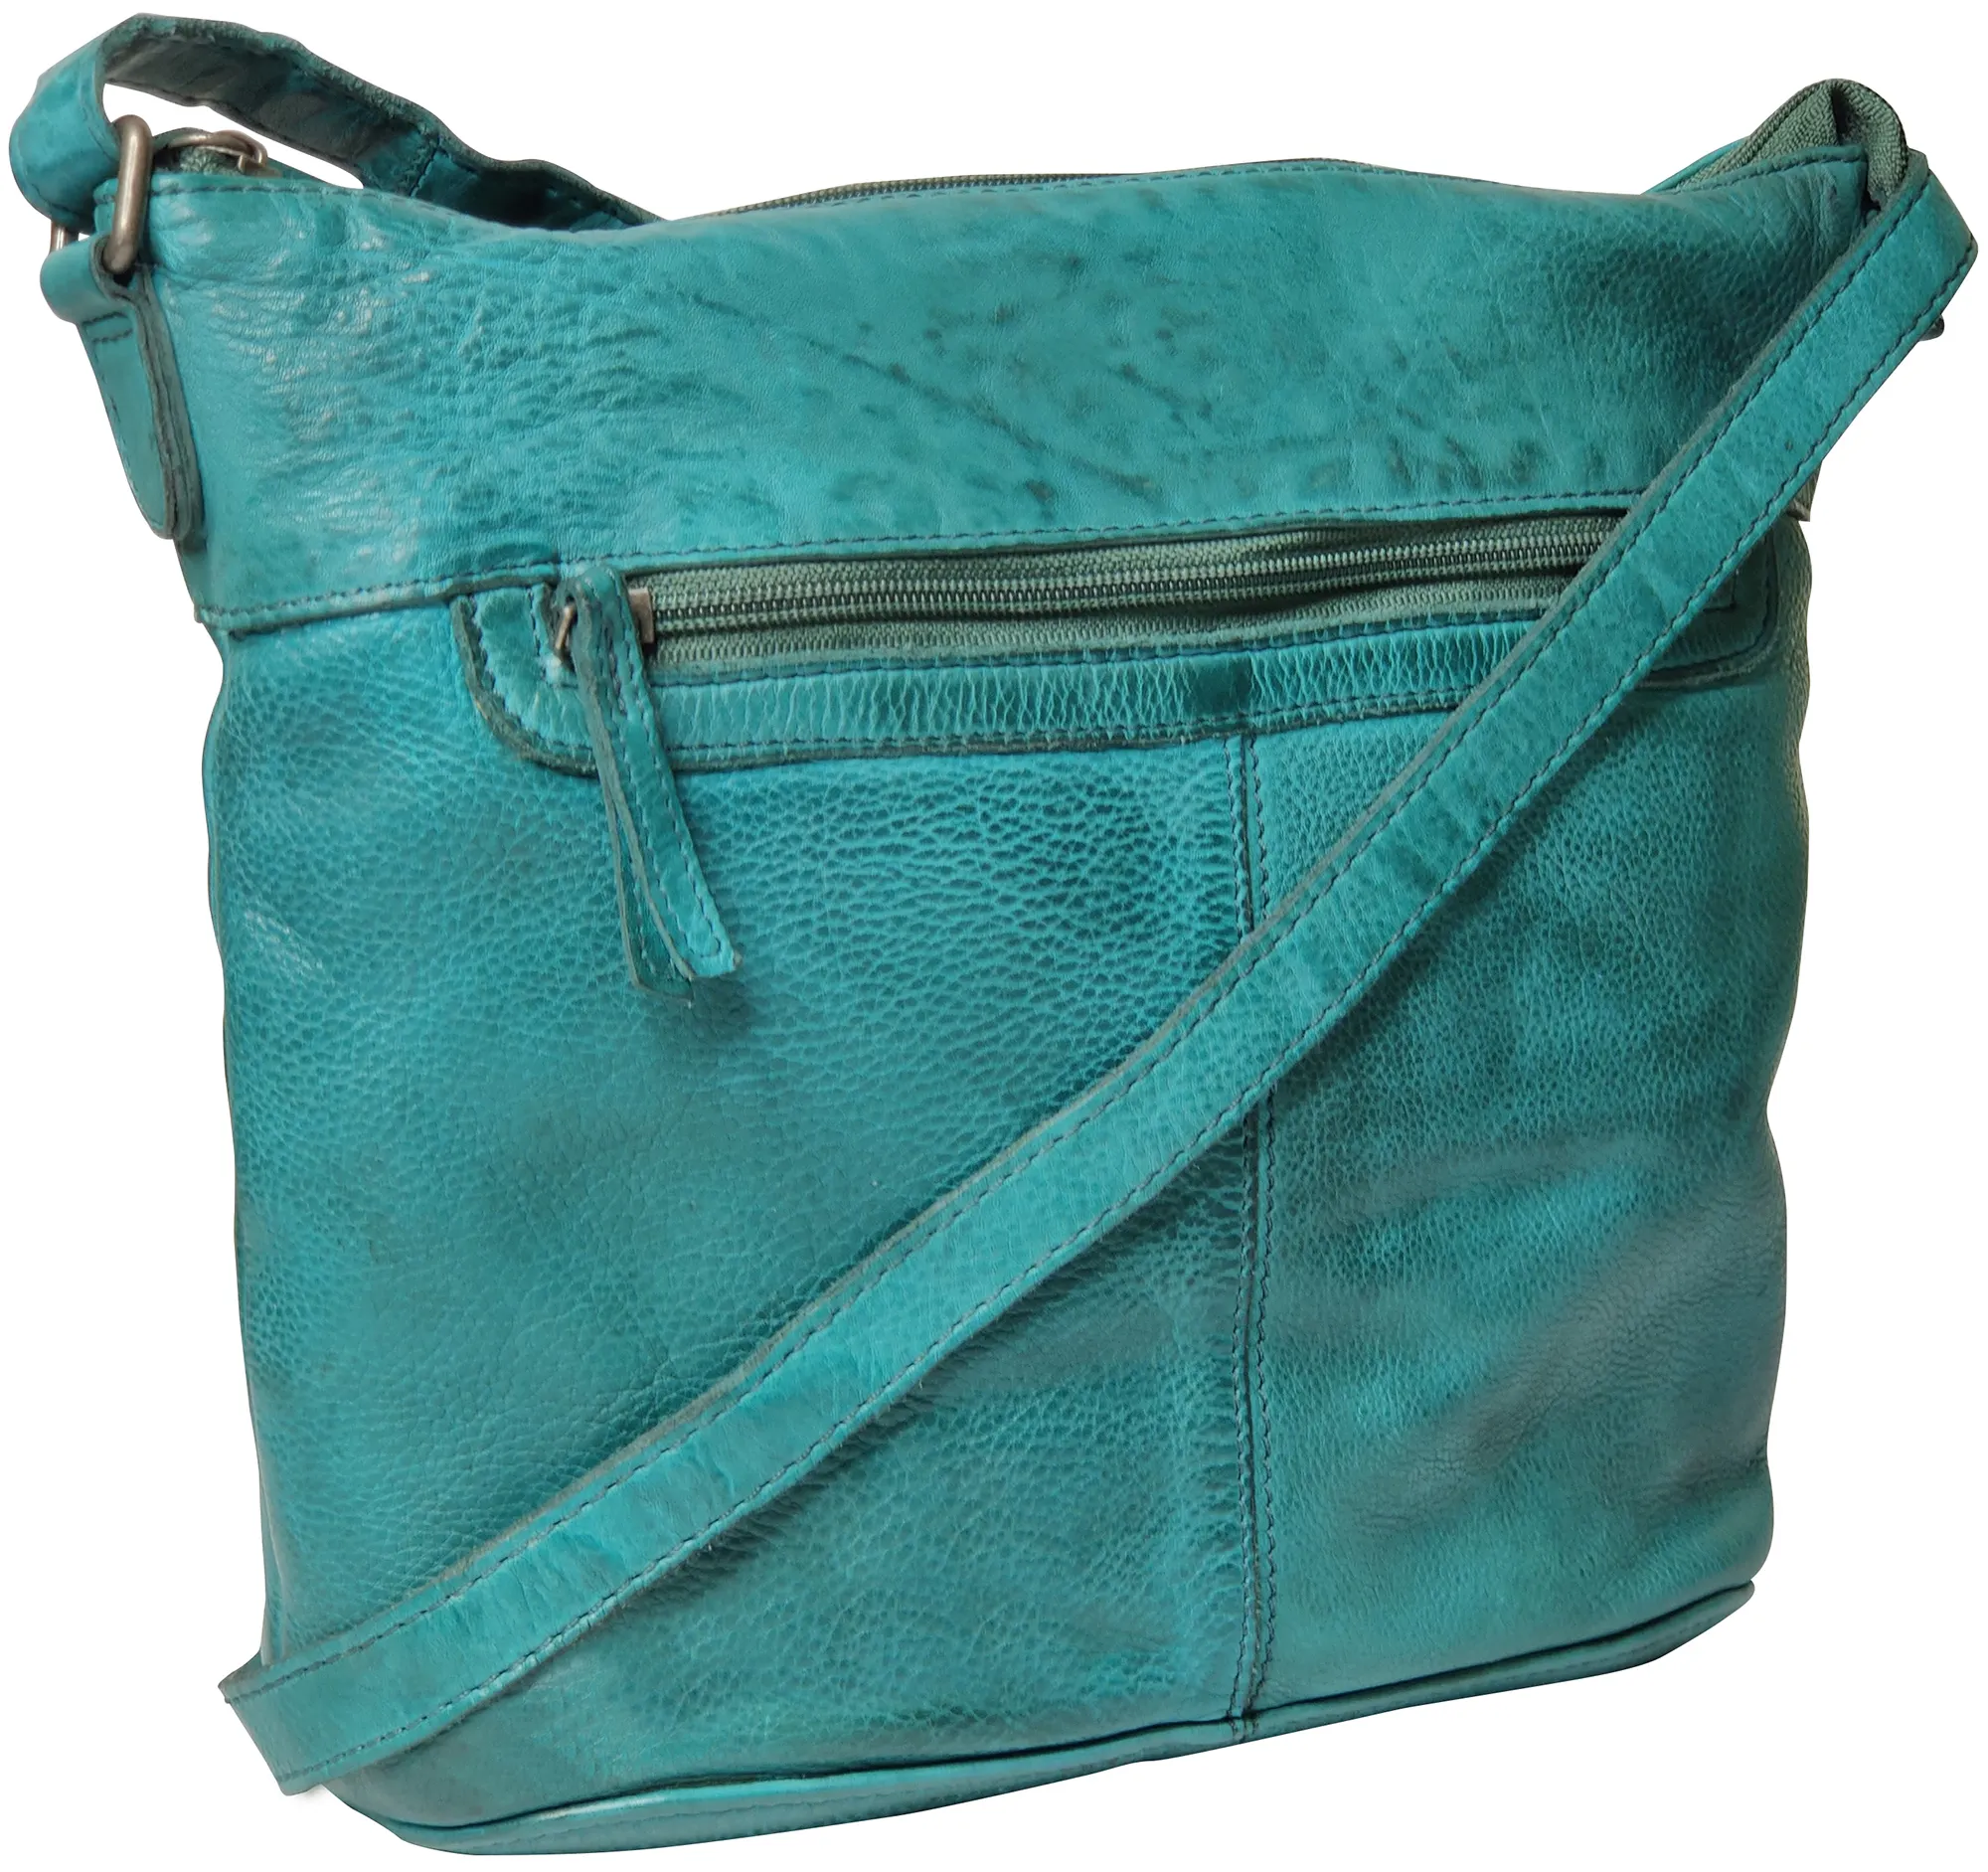 Leather Sling Bag for Women - Washed Leather Crossbody Bag Vintage Travel Shoulder Purse Handbags for Girls, Green